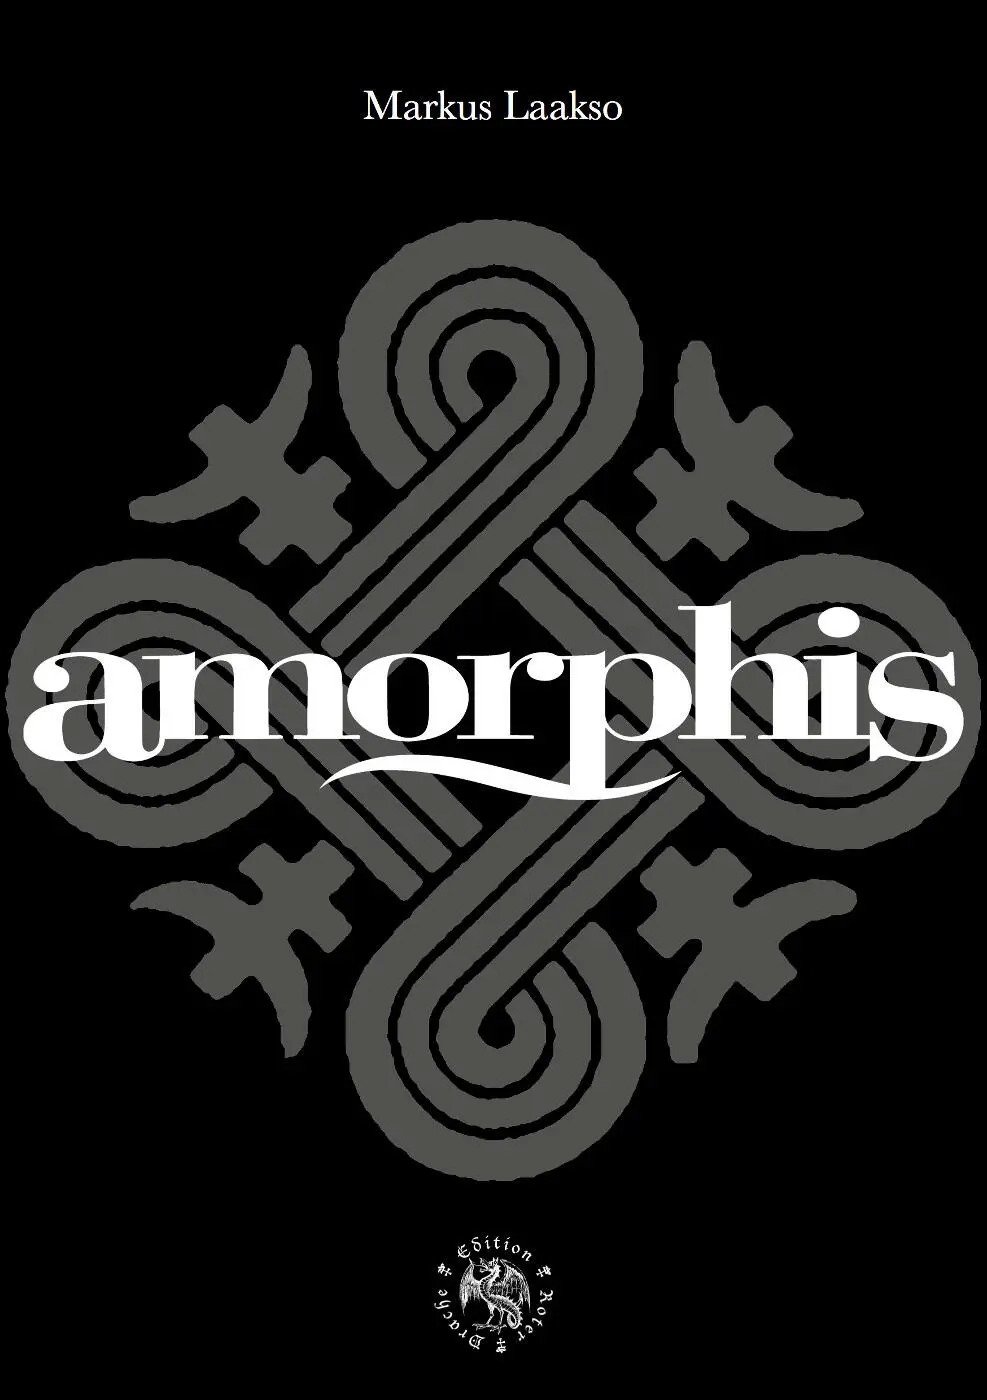 Die Originalausgabe erschien 2015 LIKE Helsinki unter dem Titel Amorphis - фото 1